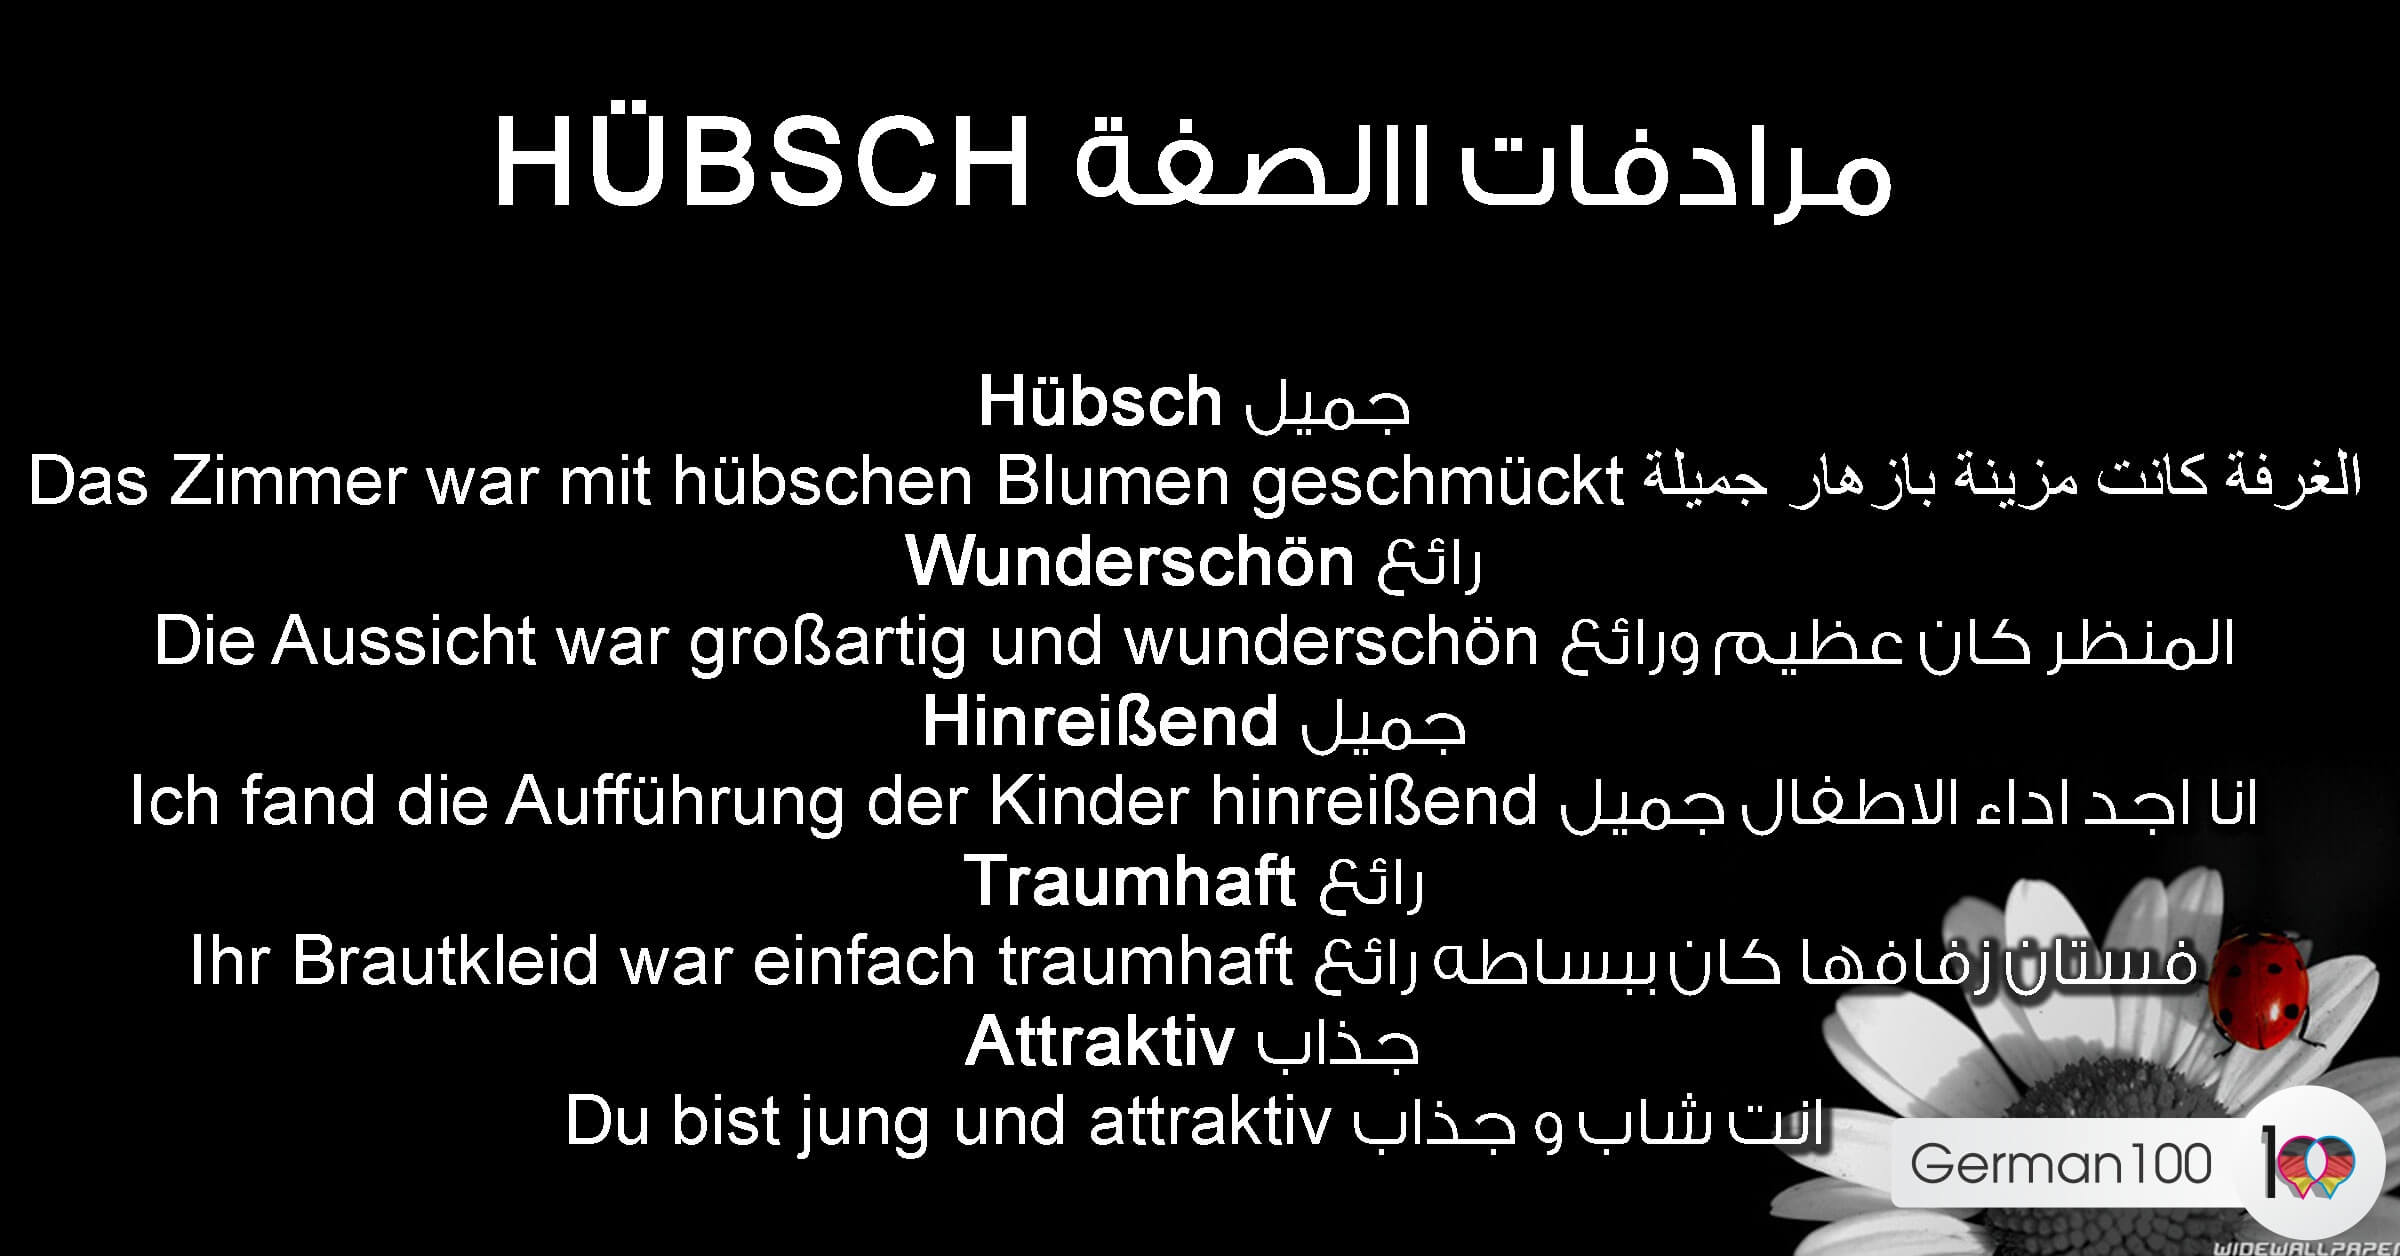 مرادفات الصفة Hübsch - تعلم اللغة الالمانية F Water Mark1506279340id 59c7ff9f8091b0 1 1 تعلم اللغة الالمانية